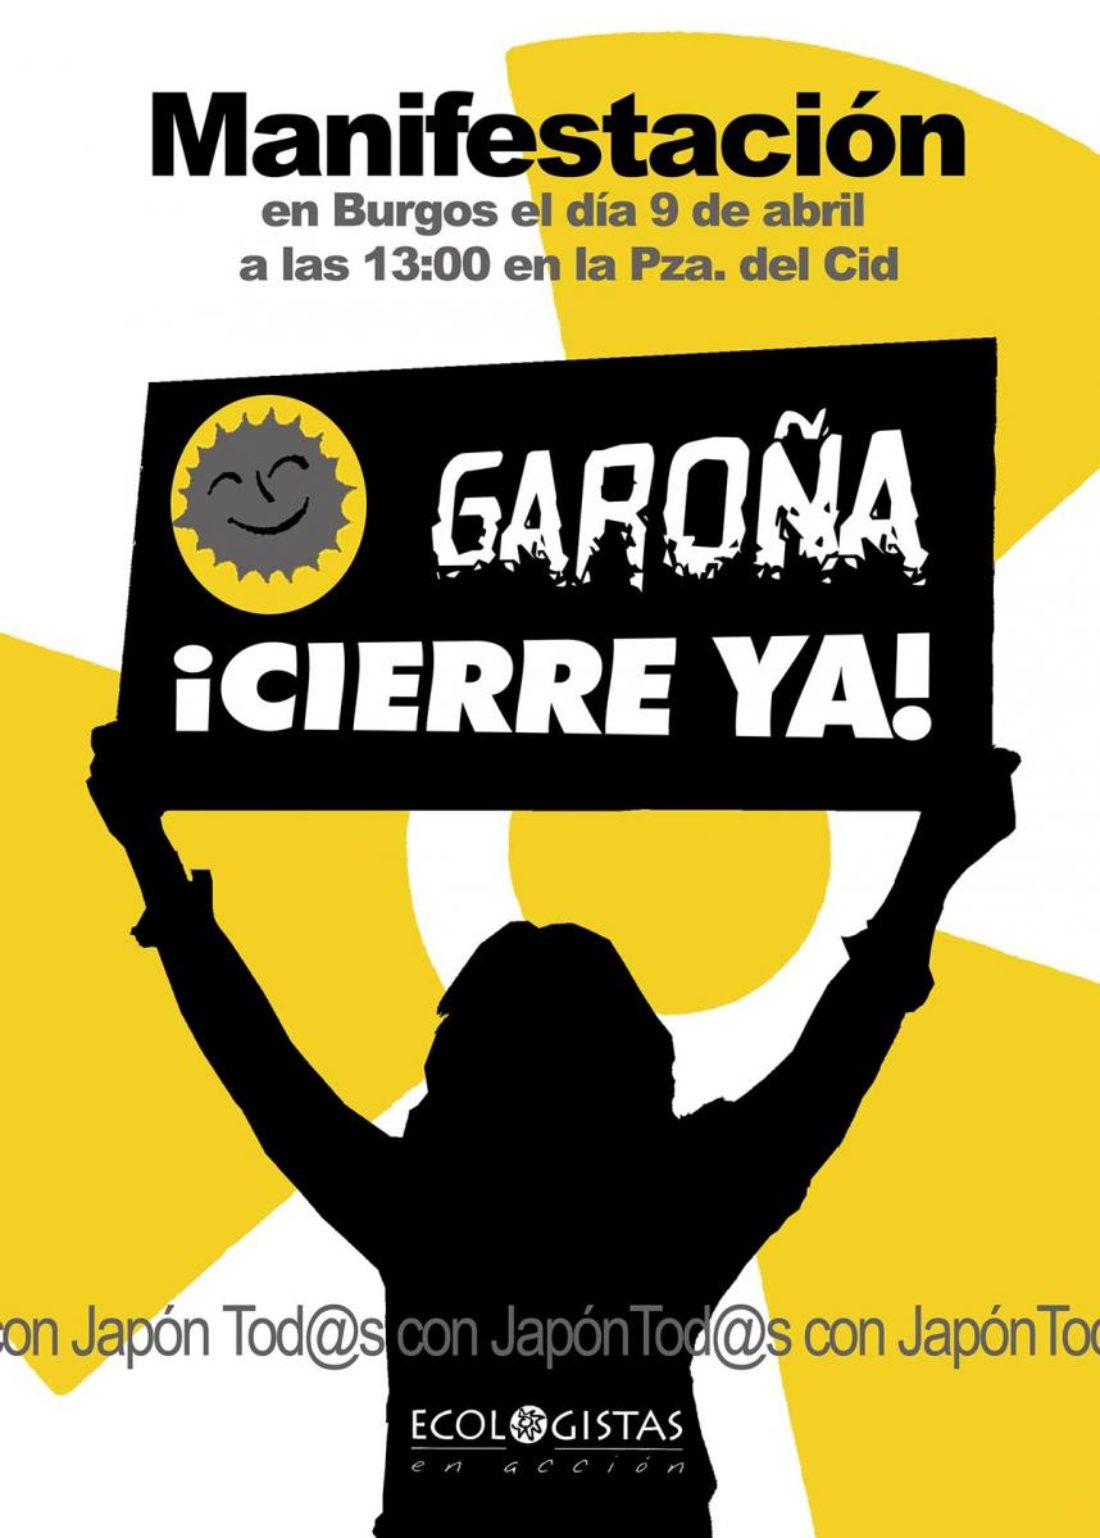 Manifestación en Burgos: Garoña ¡Cierre YA!